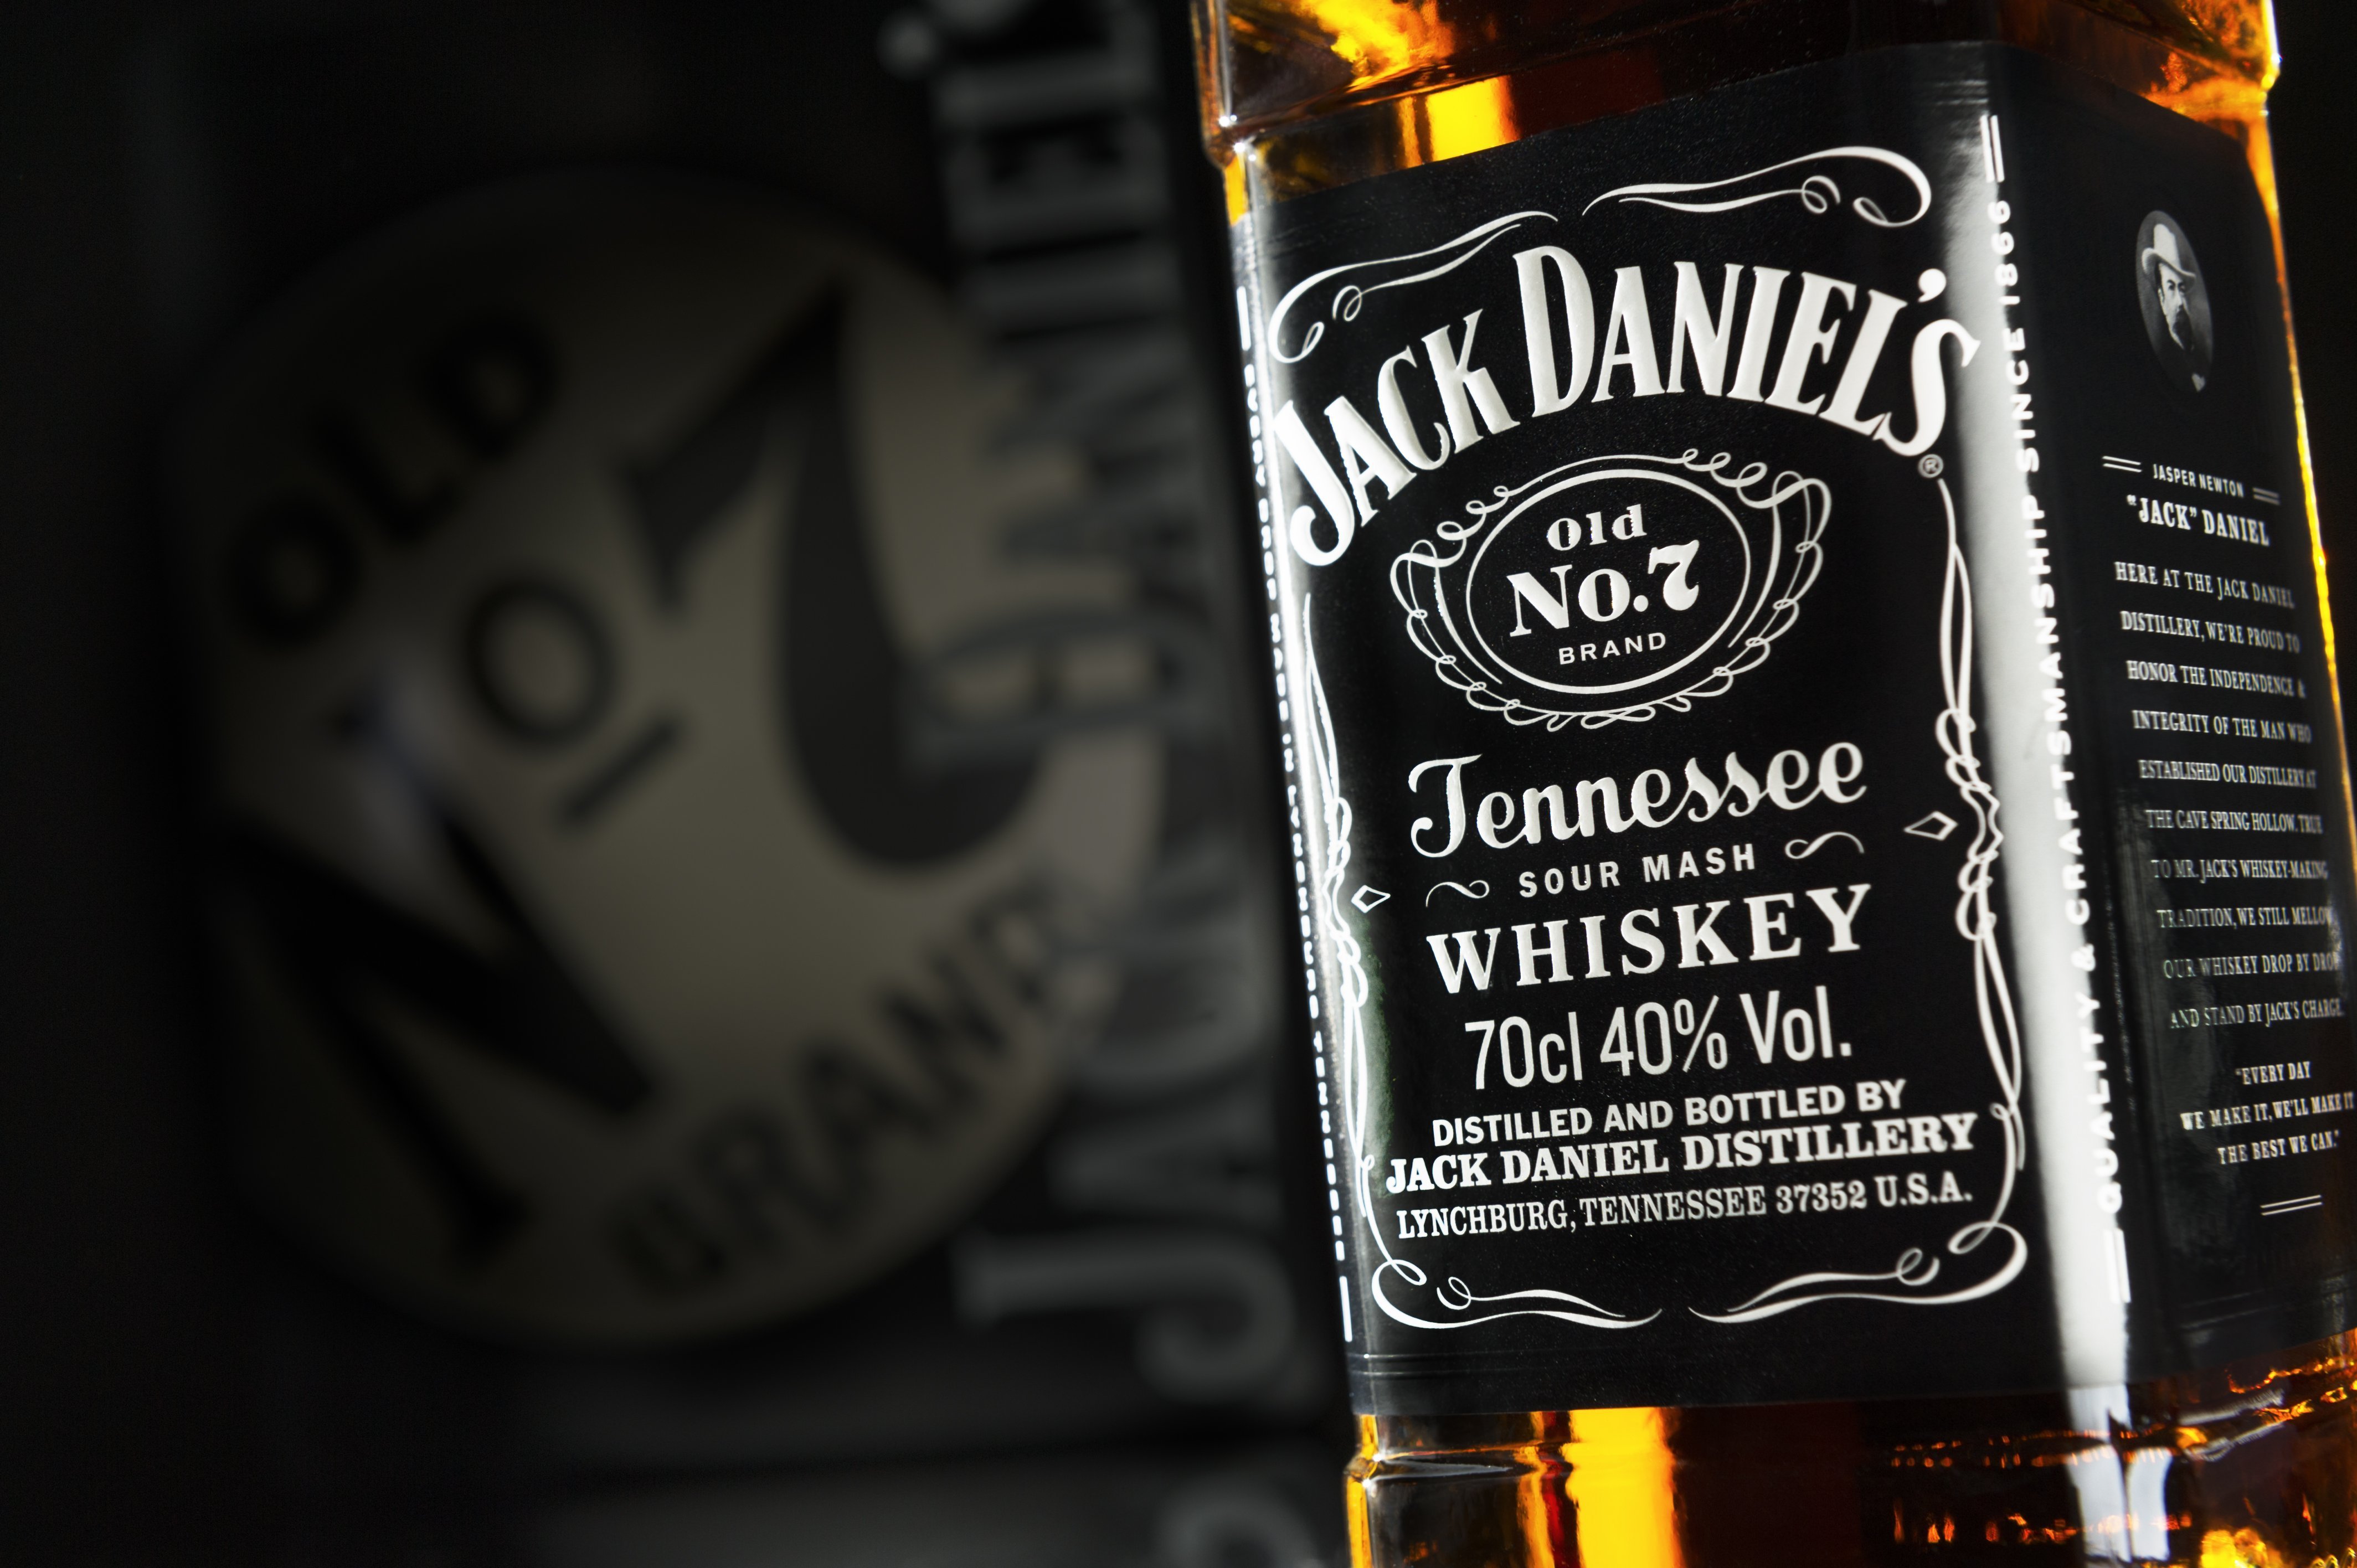 Its jacks. Американские виски Джек Дэниэлс. Виски Джек Дэниэлс 7. Виски Дени Джек Дэниэлс. Виски Джек Дэниэлс Теннесси завод.